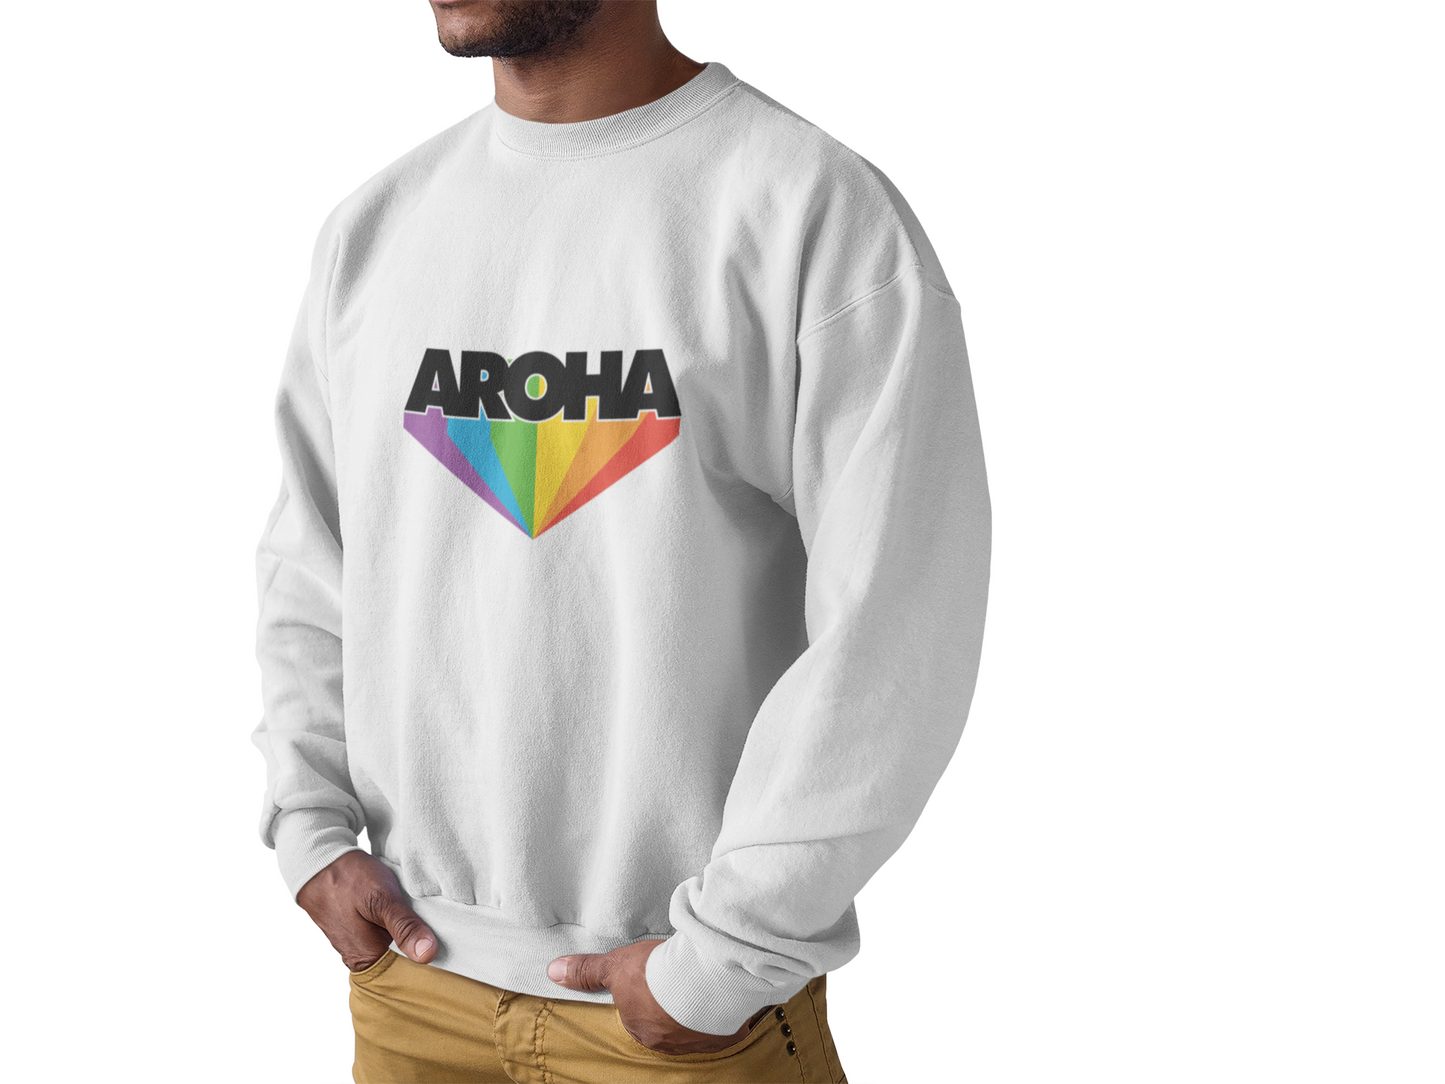 Aroha Sweatshirt